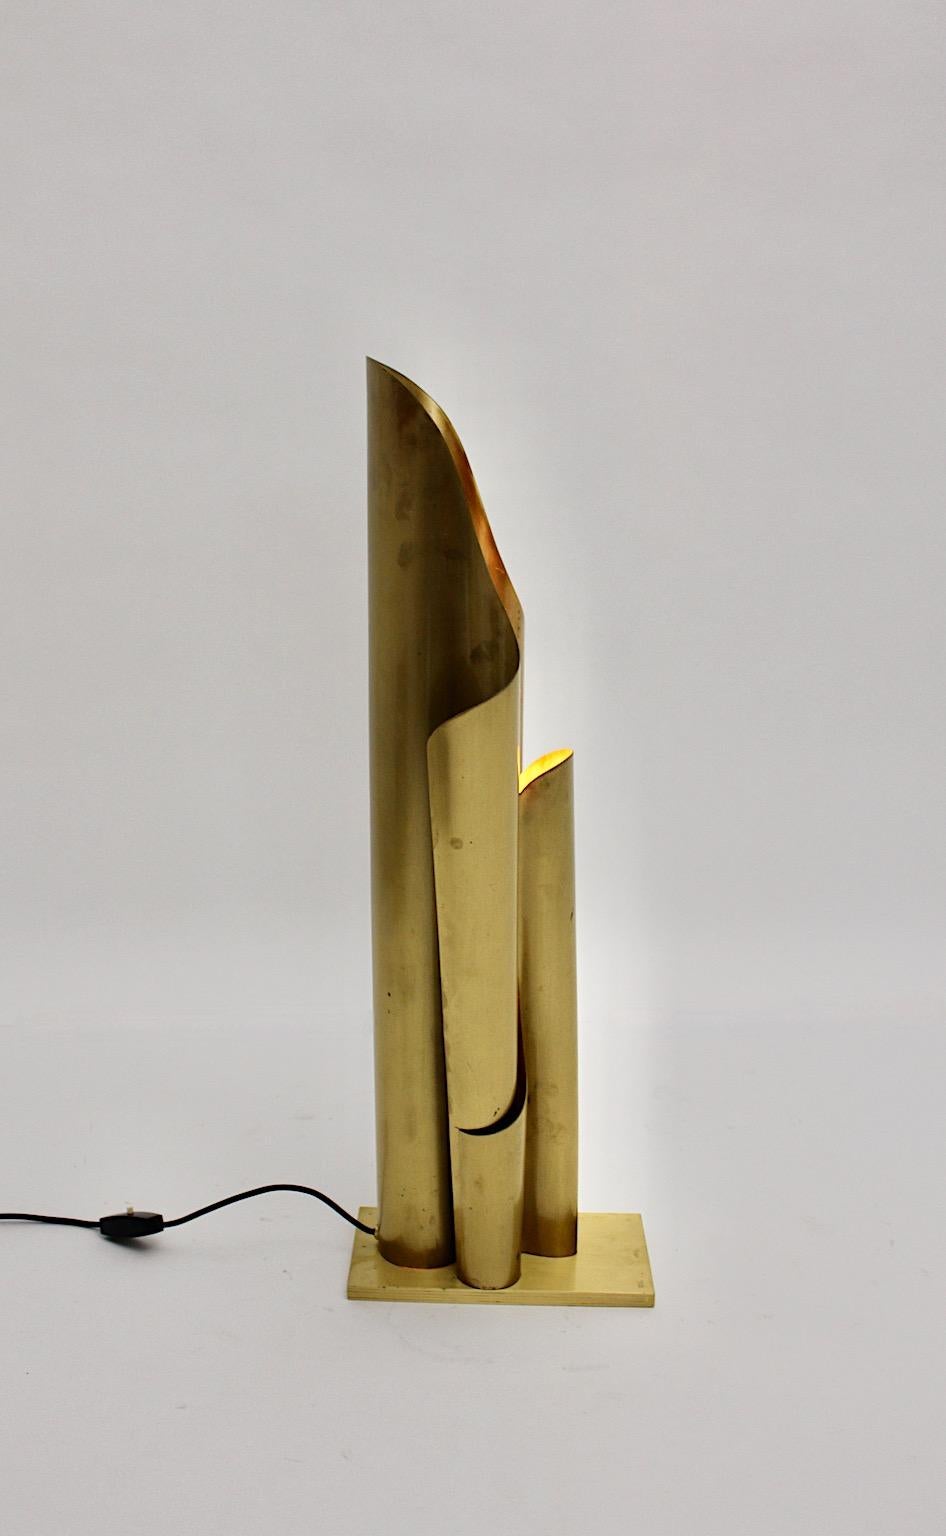 Hollywood Regency Stil goldene Metall Messing Stehlampe in geschwungener Form 1960er Jahre.
Eine wunderschöne Stehleuchte in geschwungener, kaskadenartiger Form, die dem Modell Chimera von Vico Magistretti sehr ähnlich ist und eine schöne